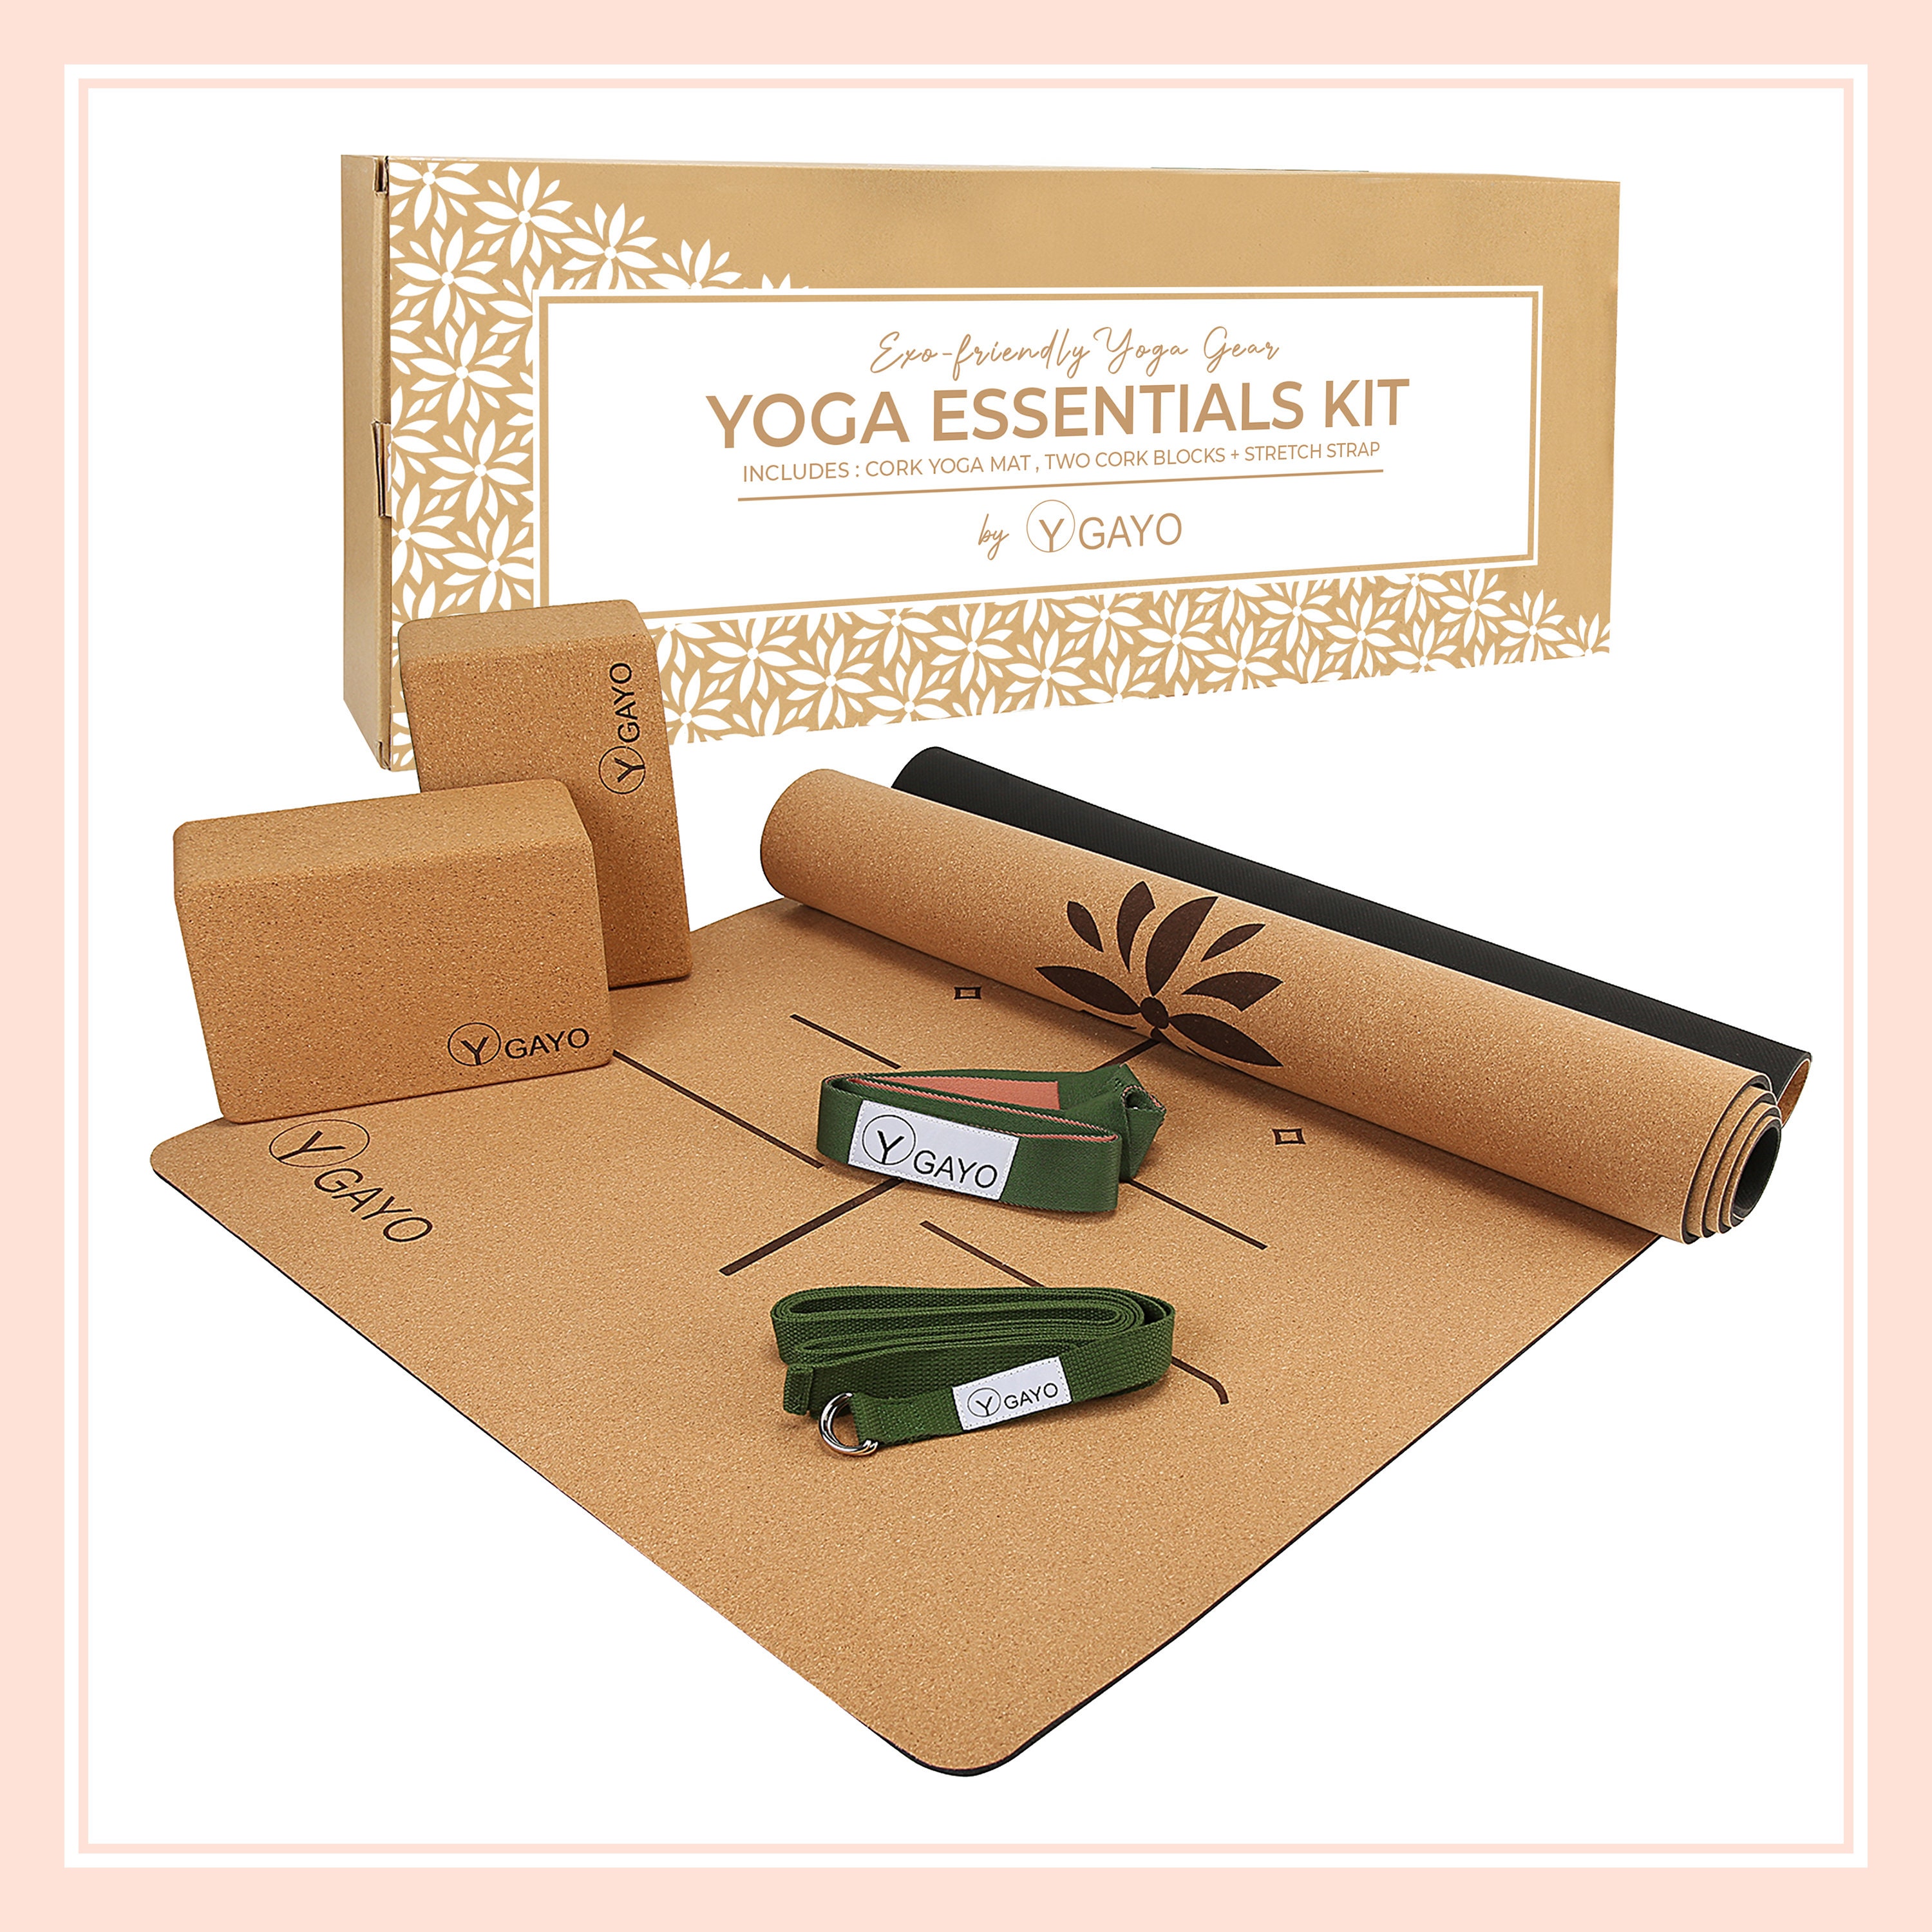 Yoga Essentials 